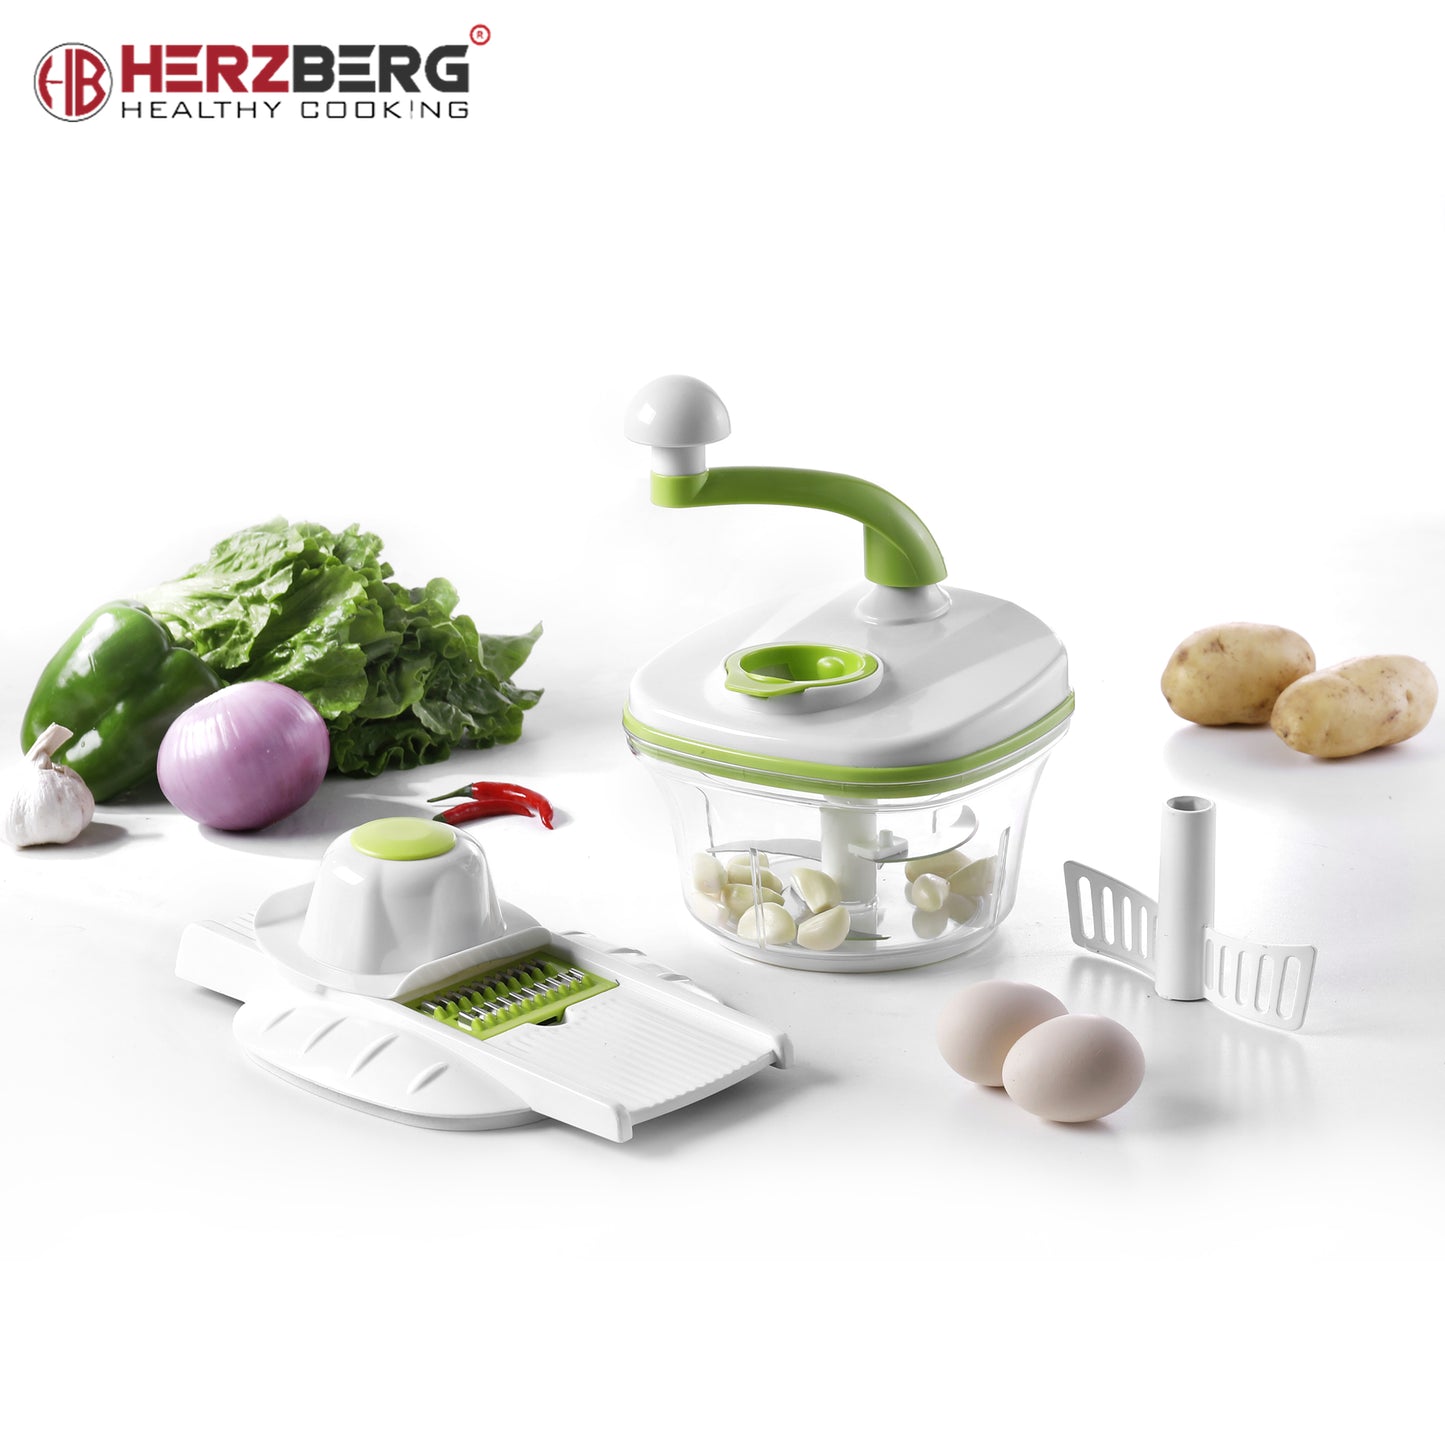 Herzberg Cooking Herzberg Hg-8031: 10-In-1 Hak- En Snijset